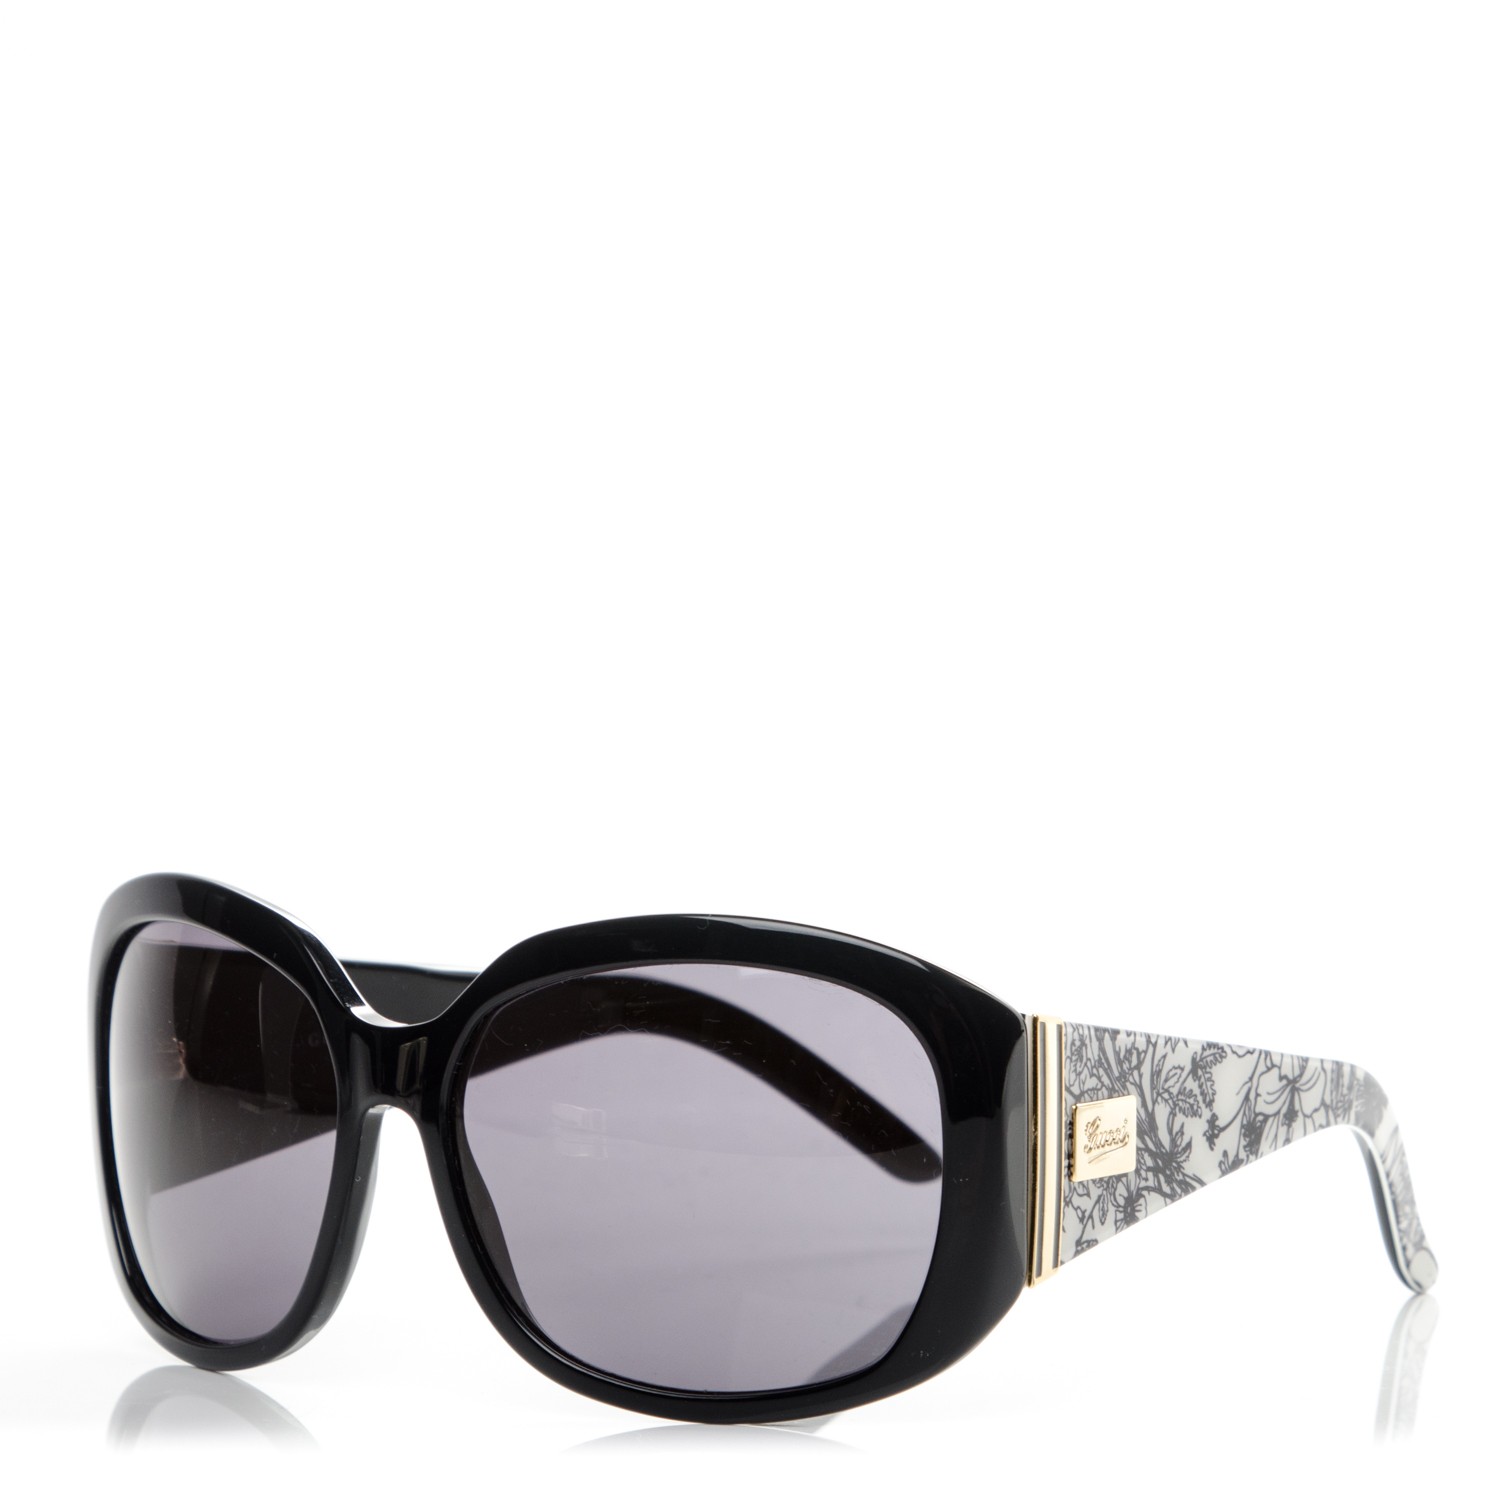 gucci sunglasses black and white